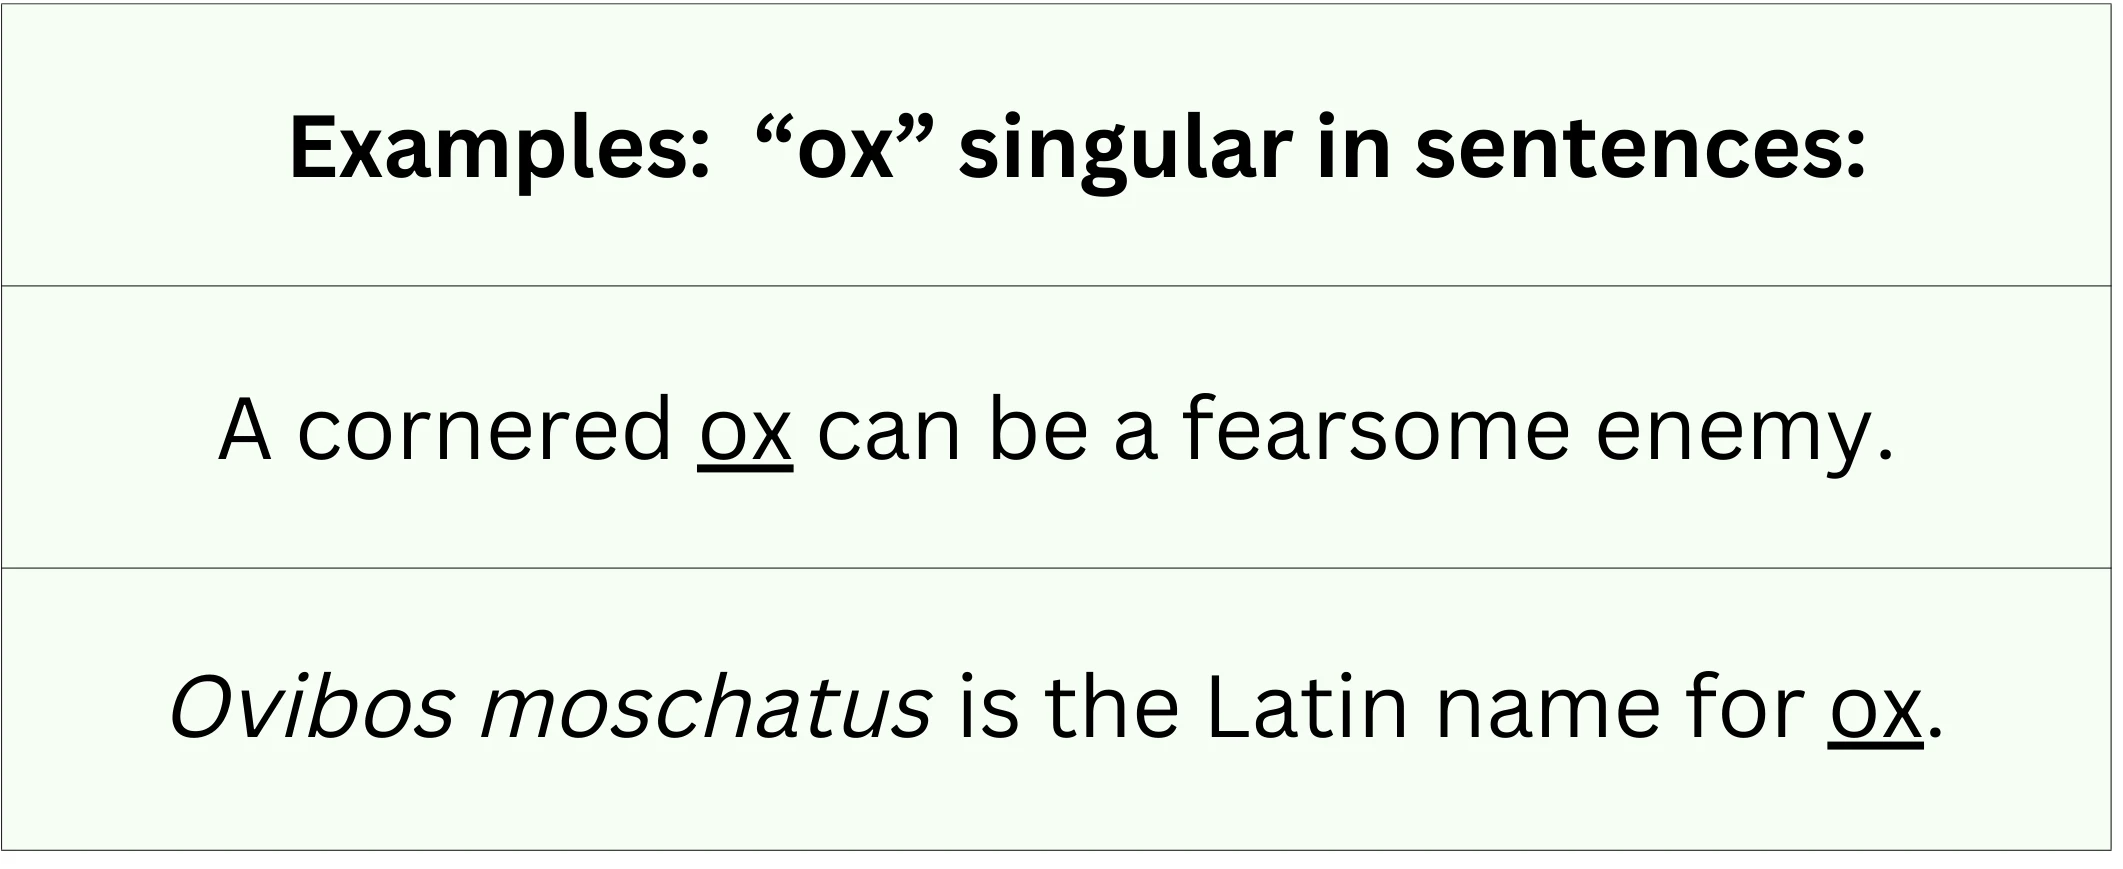 "Ox" singular shown in sentences.